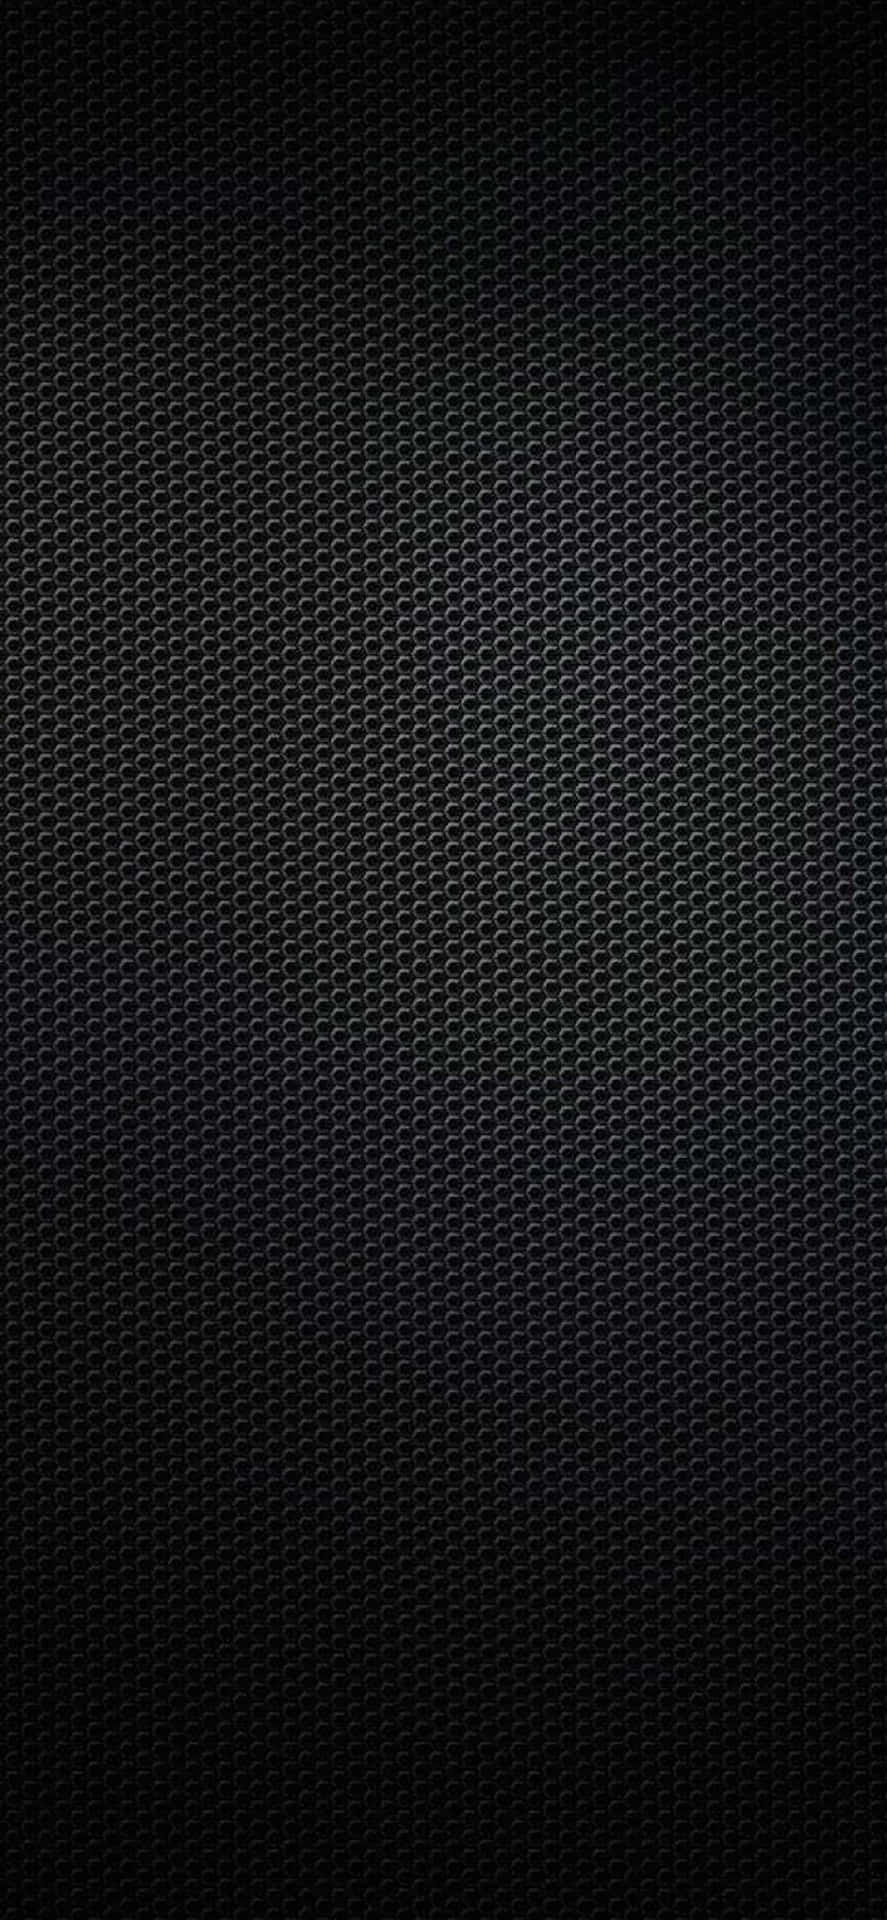 Shiny Black Carbon Fiber Wallpaper